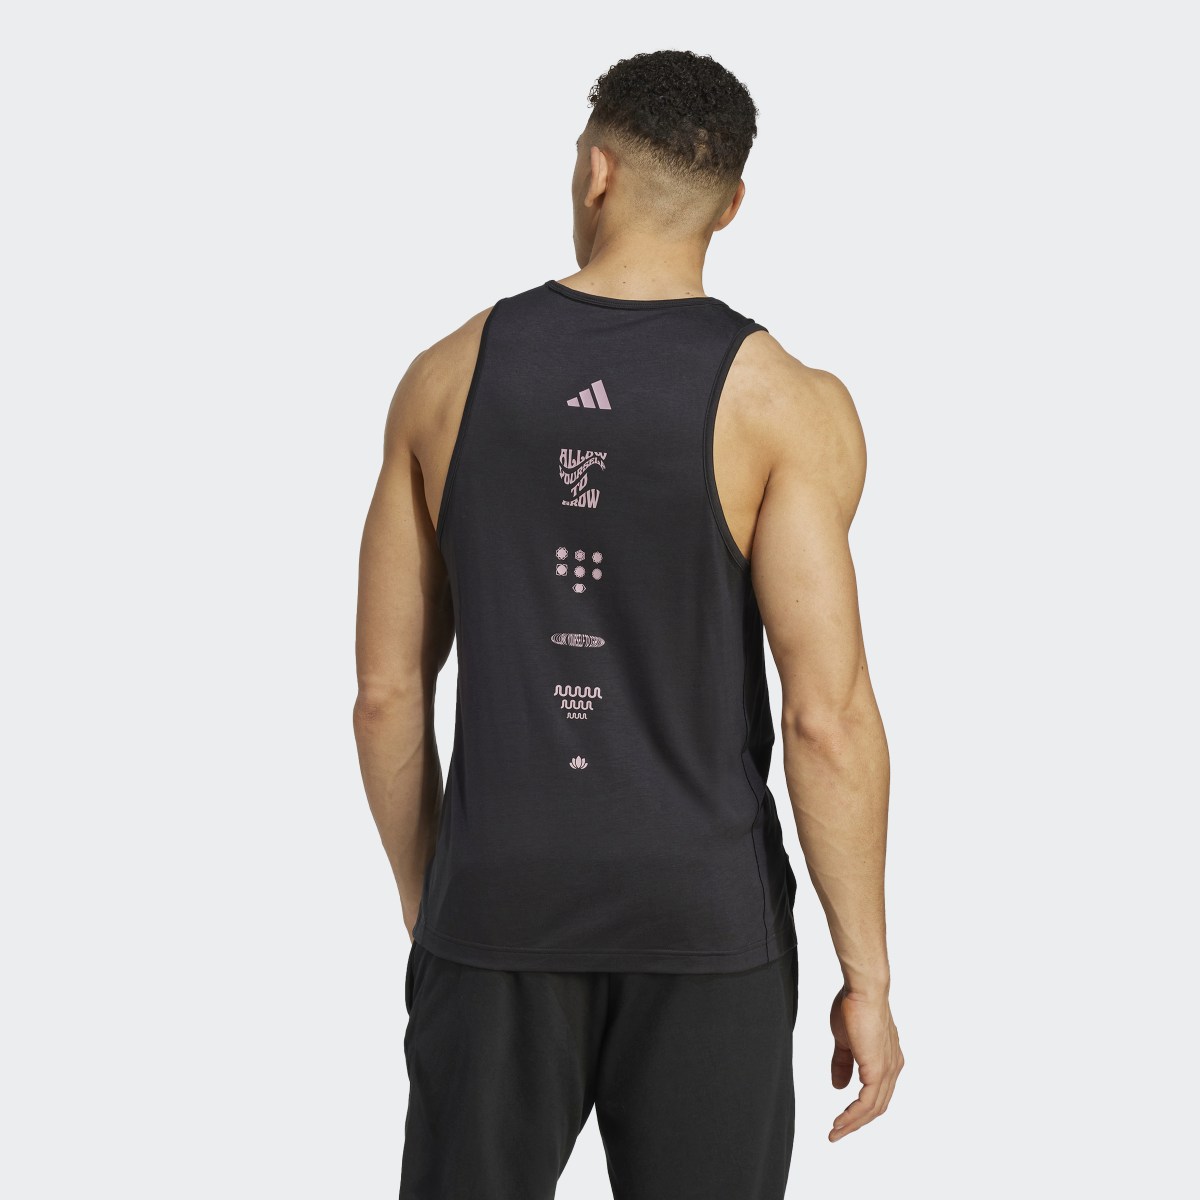 Adidas Camiseta sin mangas Yoga Training. 4